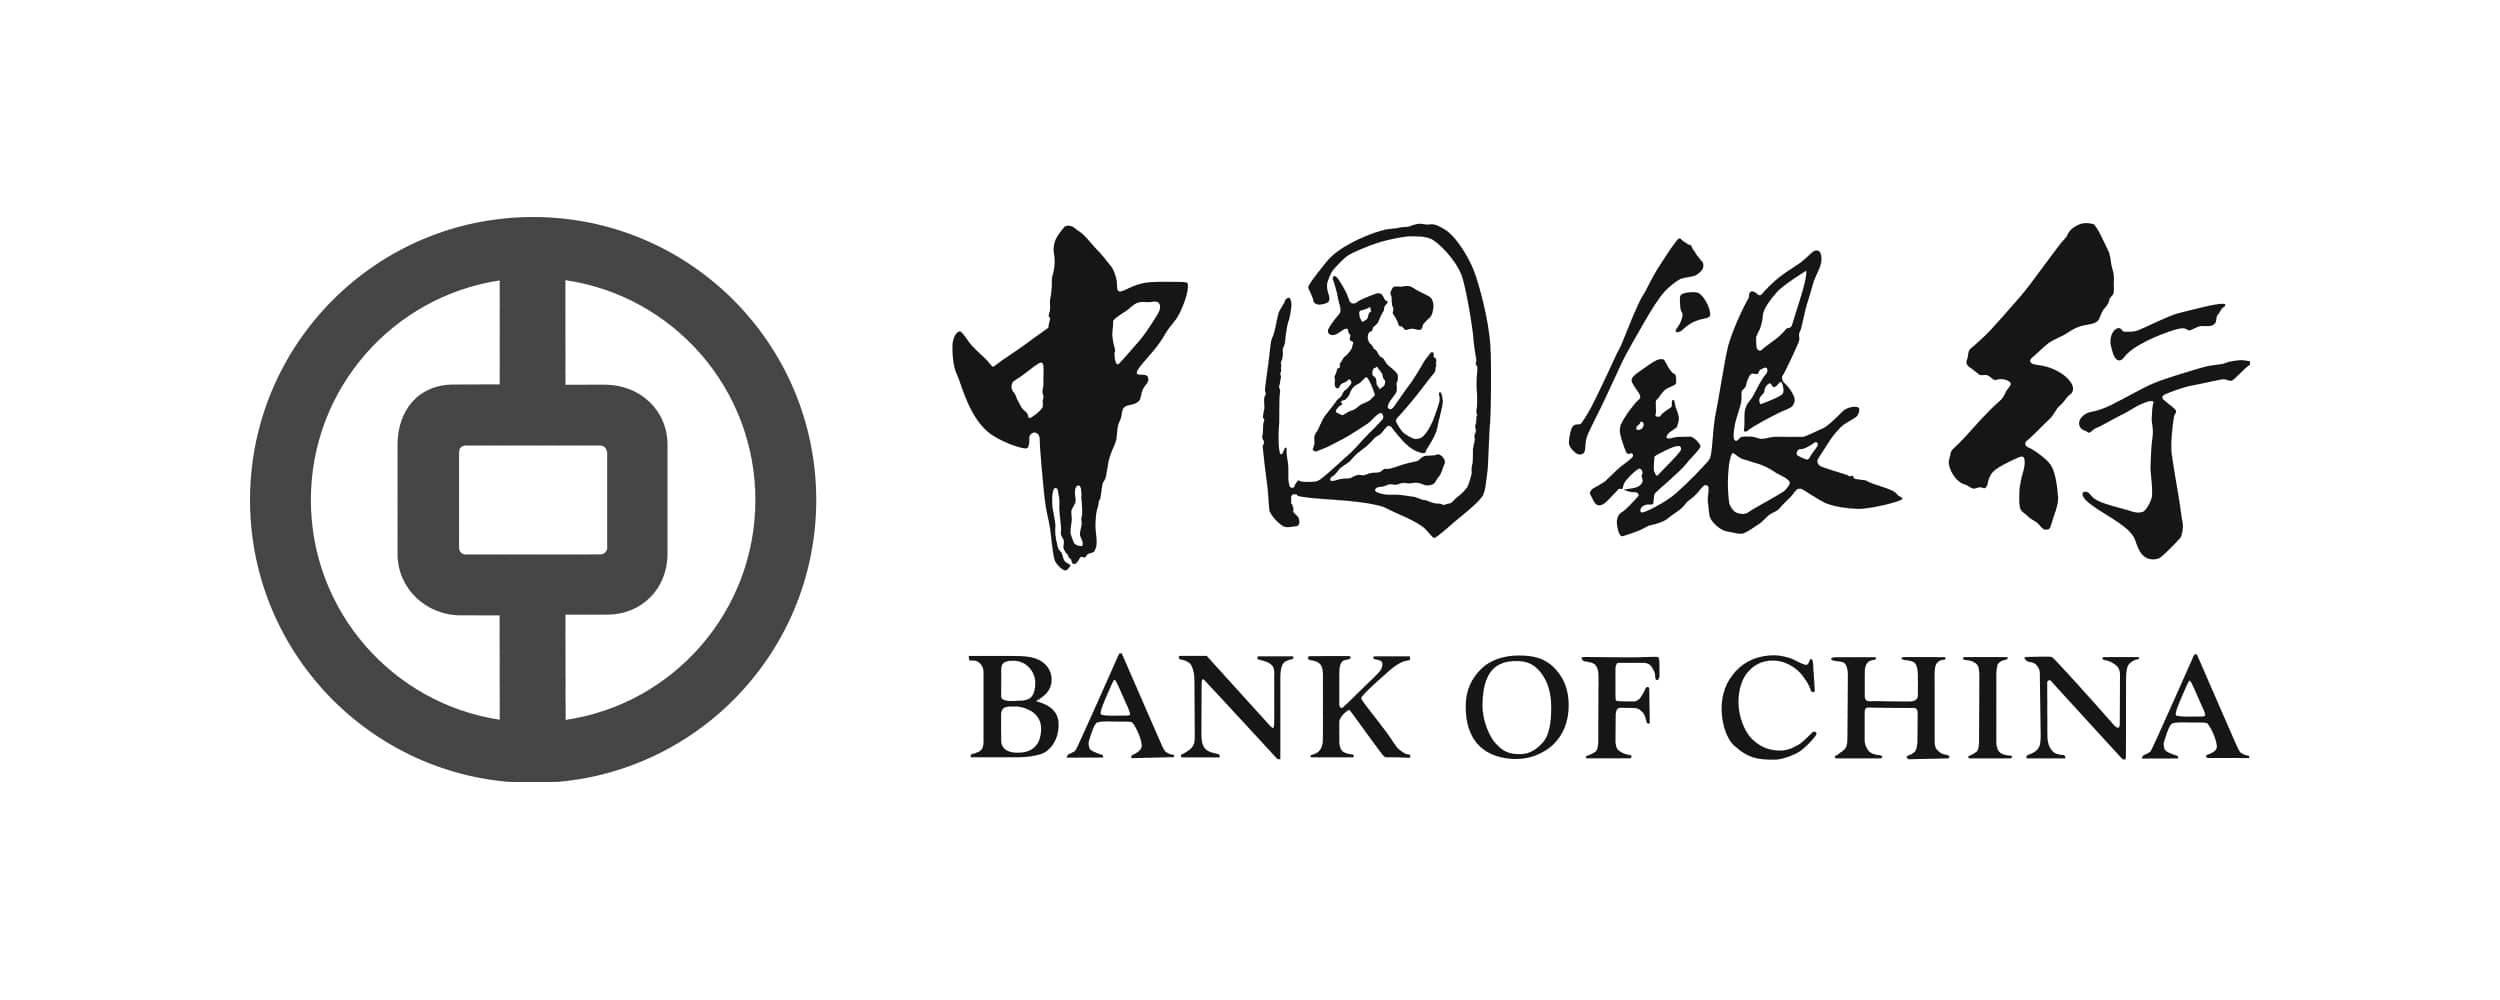 bank-of-china-logo